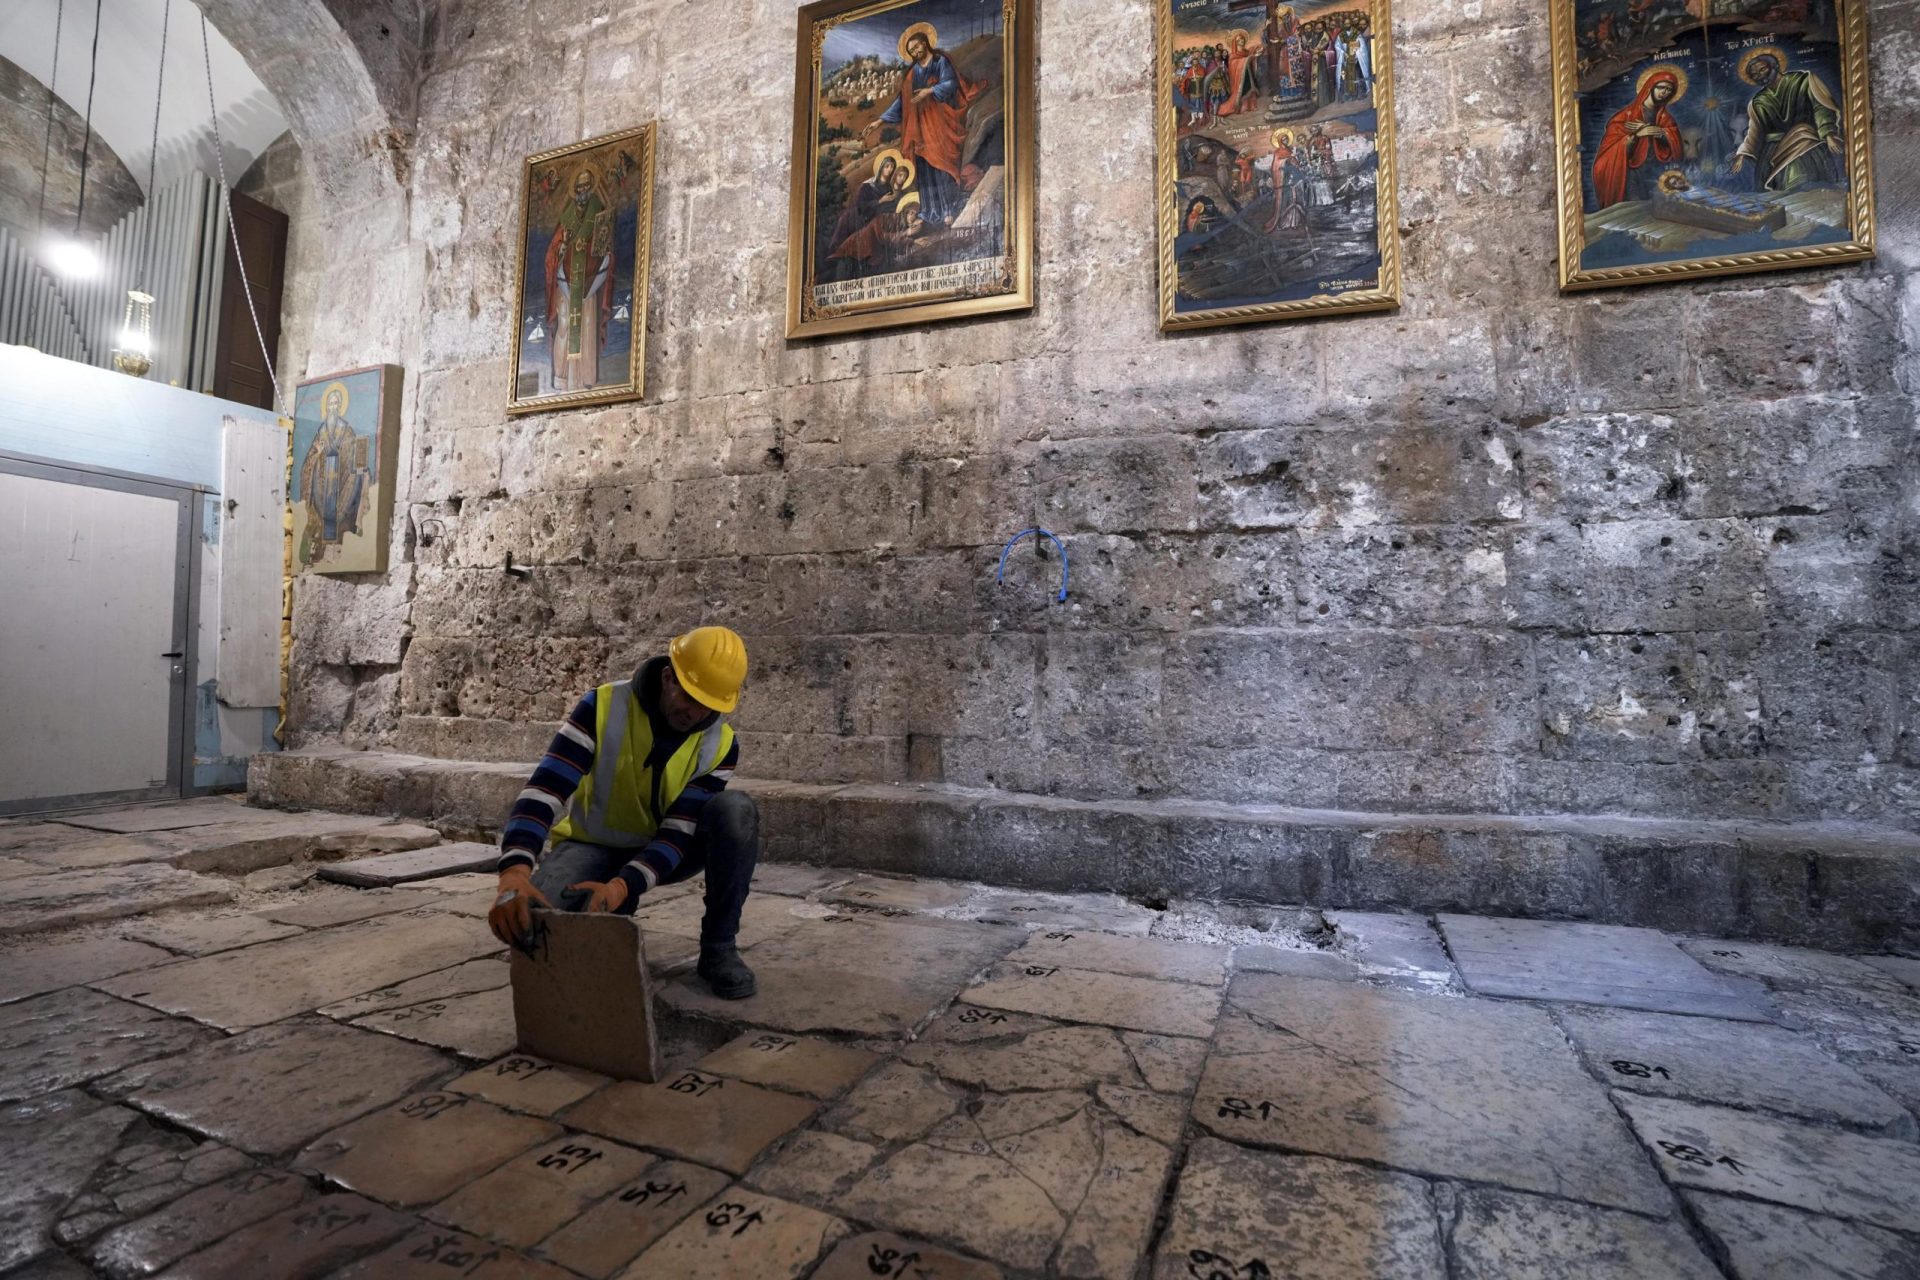 Los cristianos encuentran unidad en la restauración de la iglesia más sagrada de Jerusalén